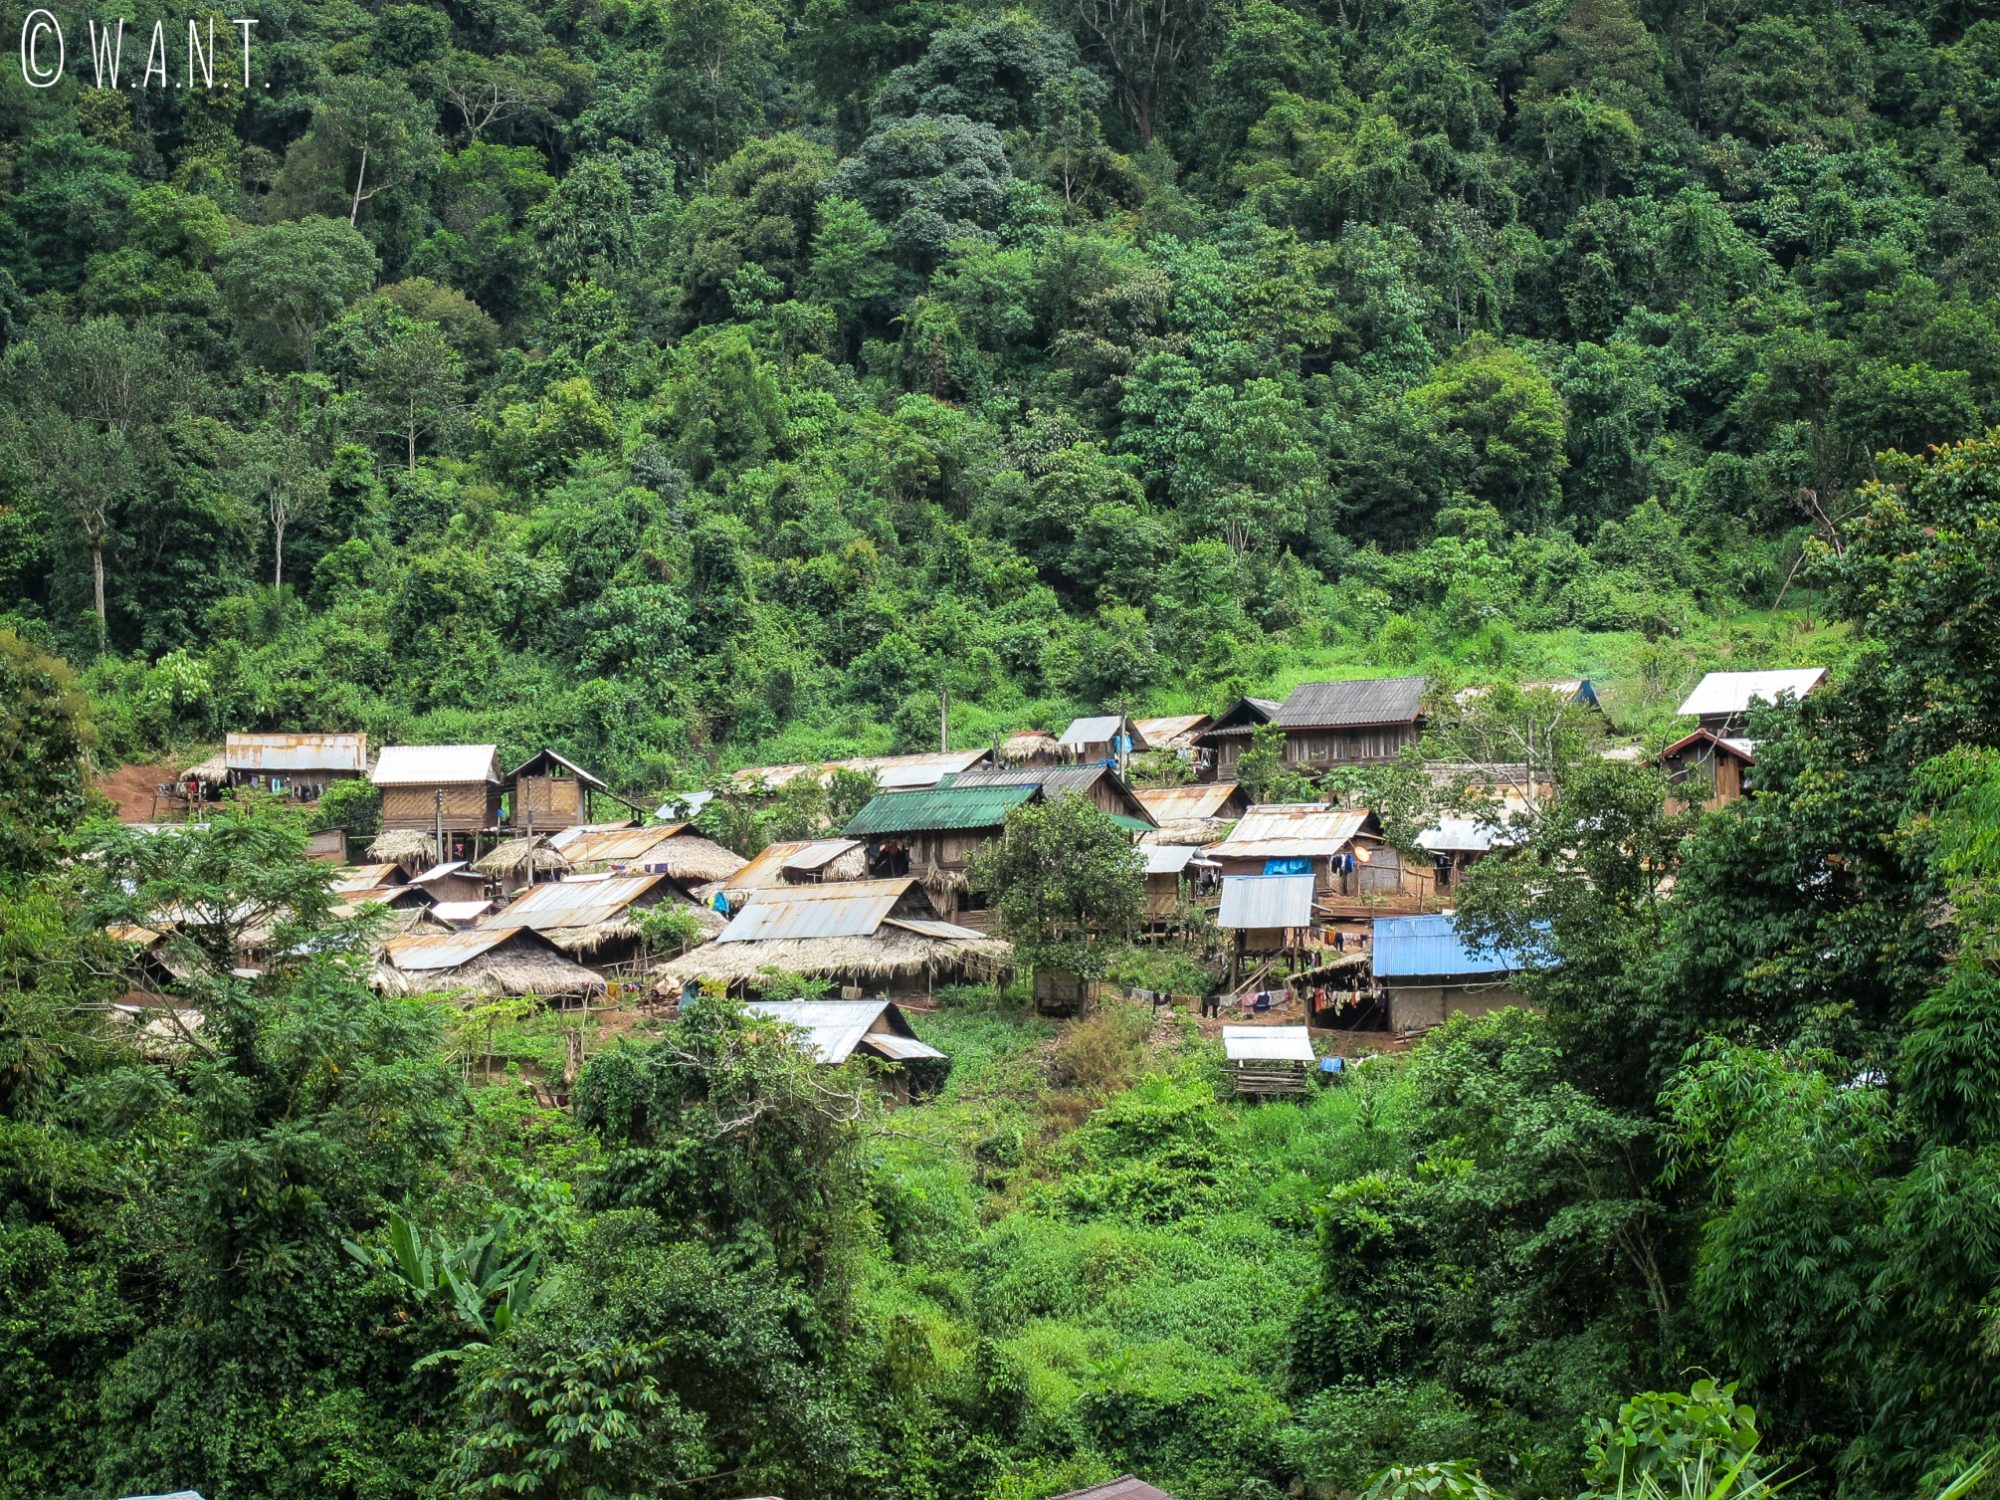 Village niché dans la végétation entre Luang Namtha et Muang Sing